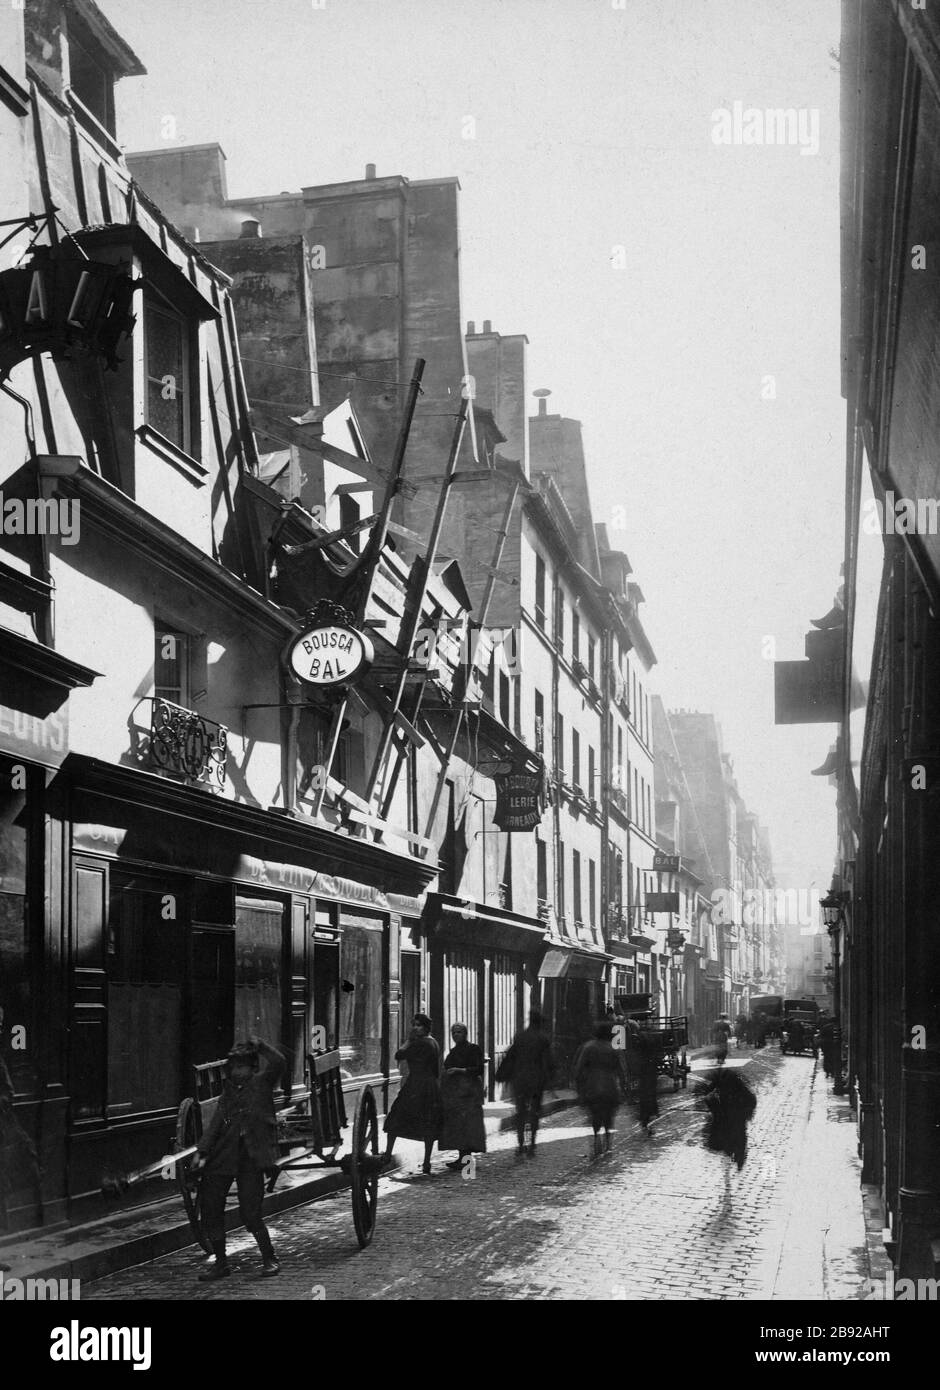 RUE DE Lapp Rue de Lappe, vue pittoresque. Paris (XIème arr.), 30 septembre 1920. Photographie de Charles Lansiaux (1855-1939). Paris, musée Carnavalet. Stock Photo